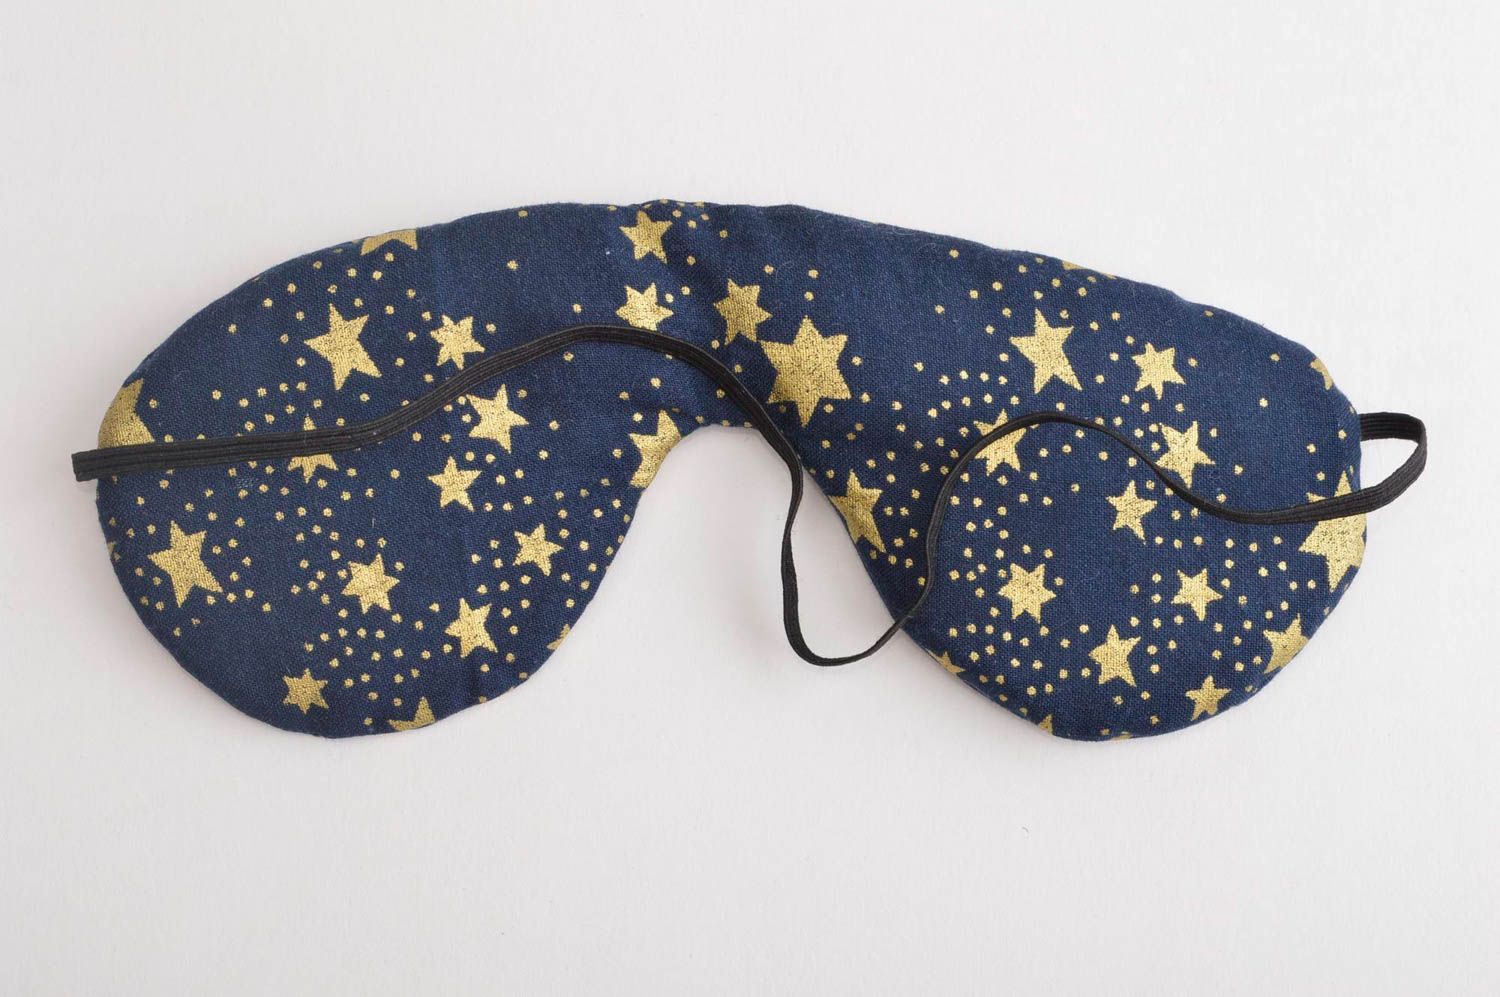 Повязка для сна ручной работы маска для сна синяя со звездами очки для сна фото 3